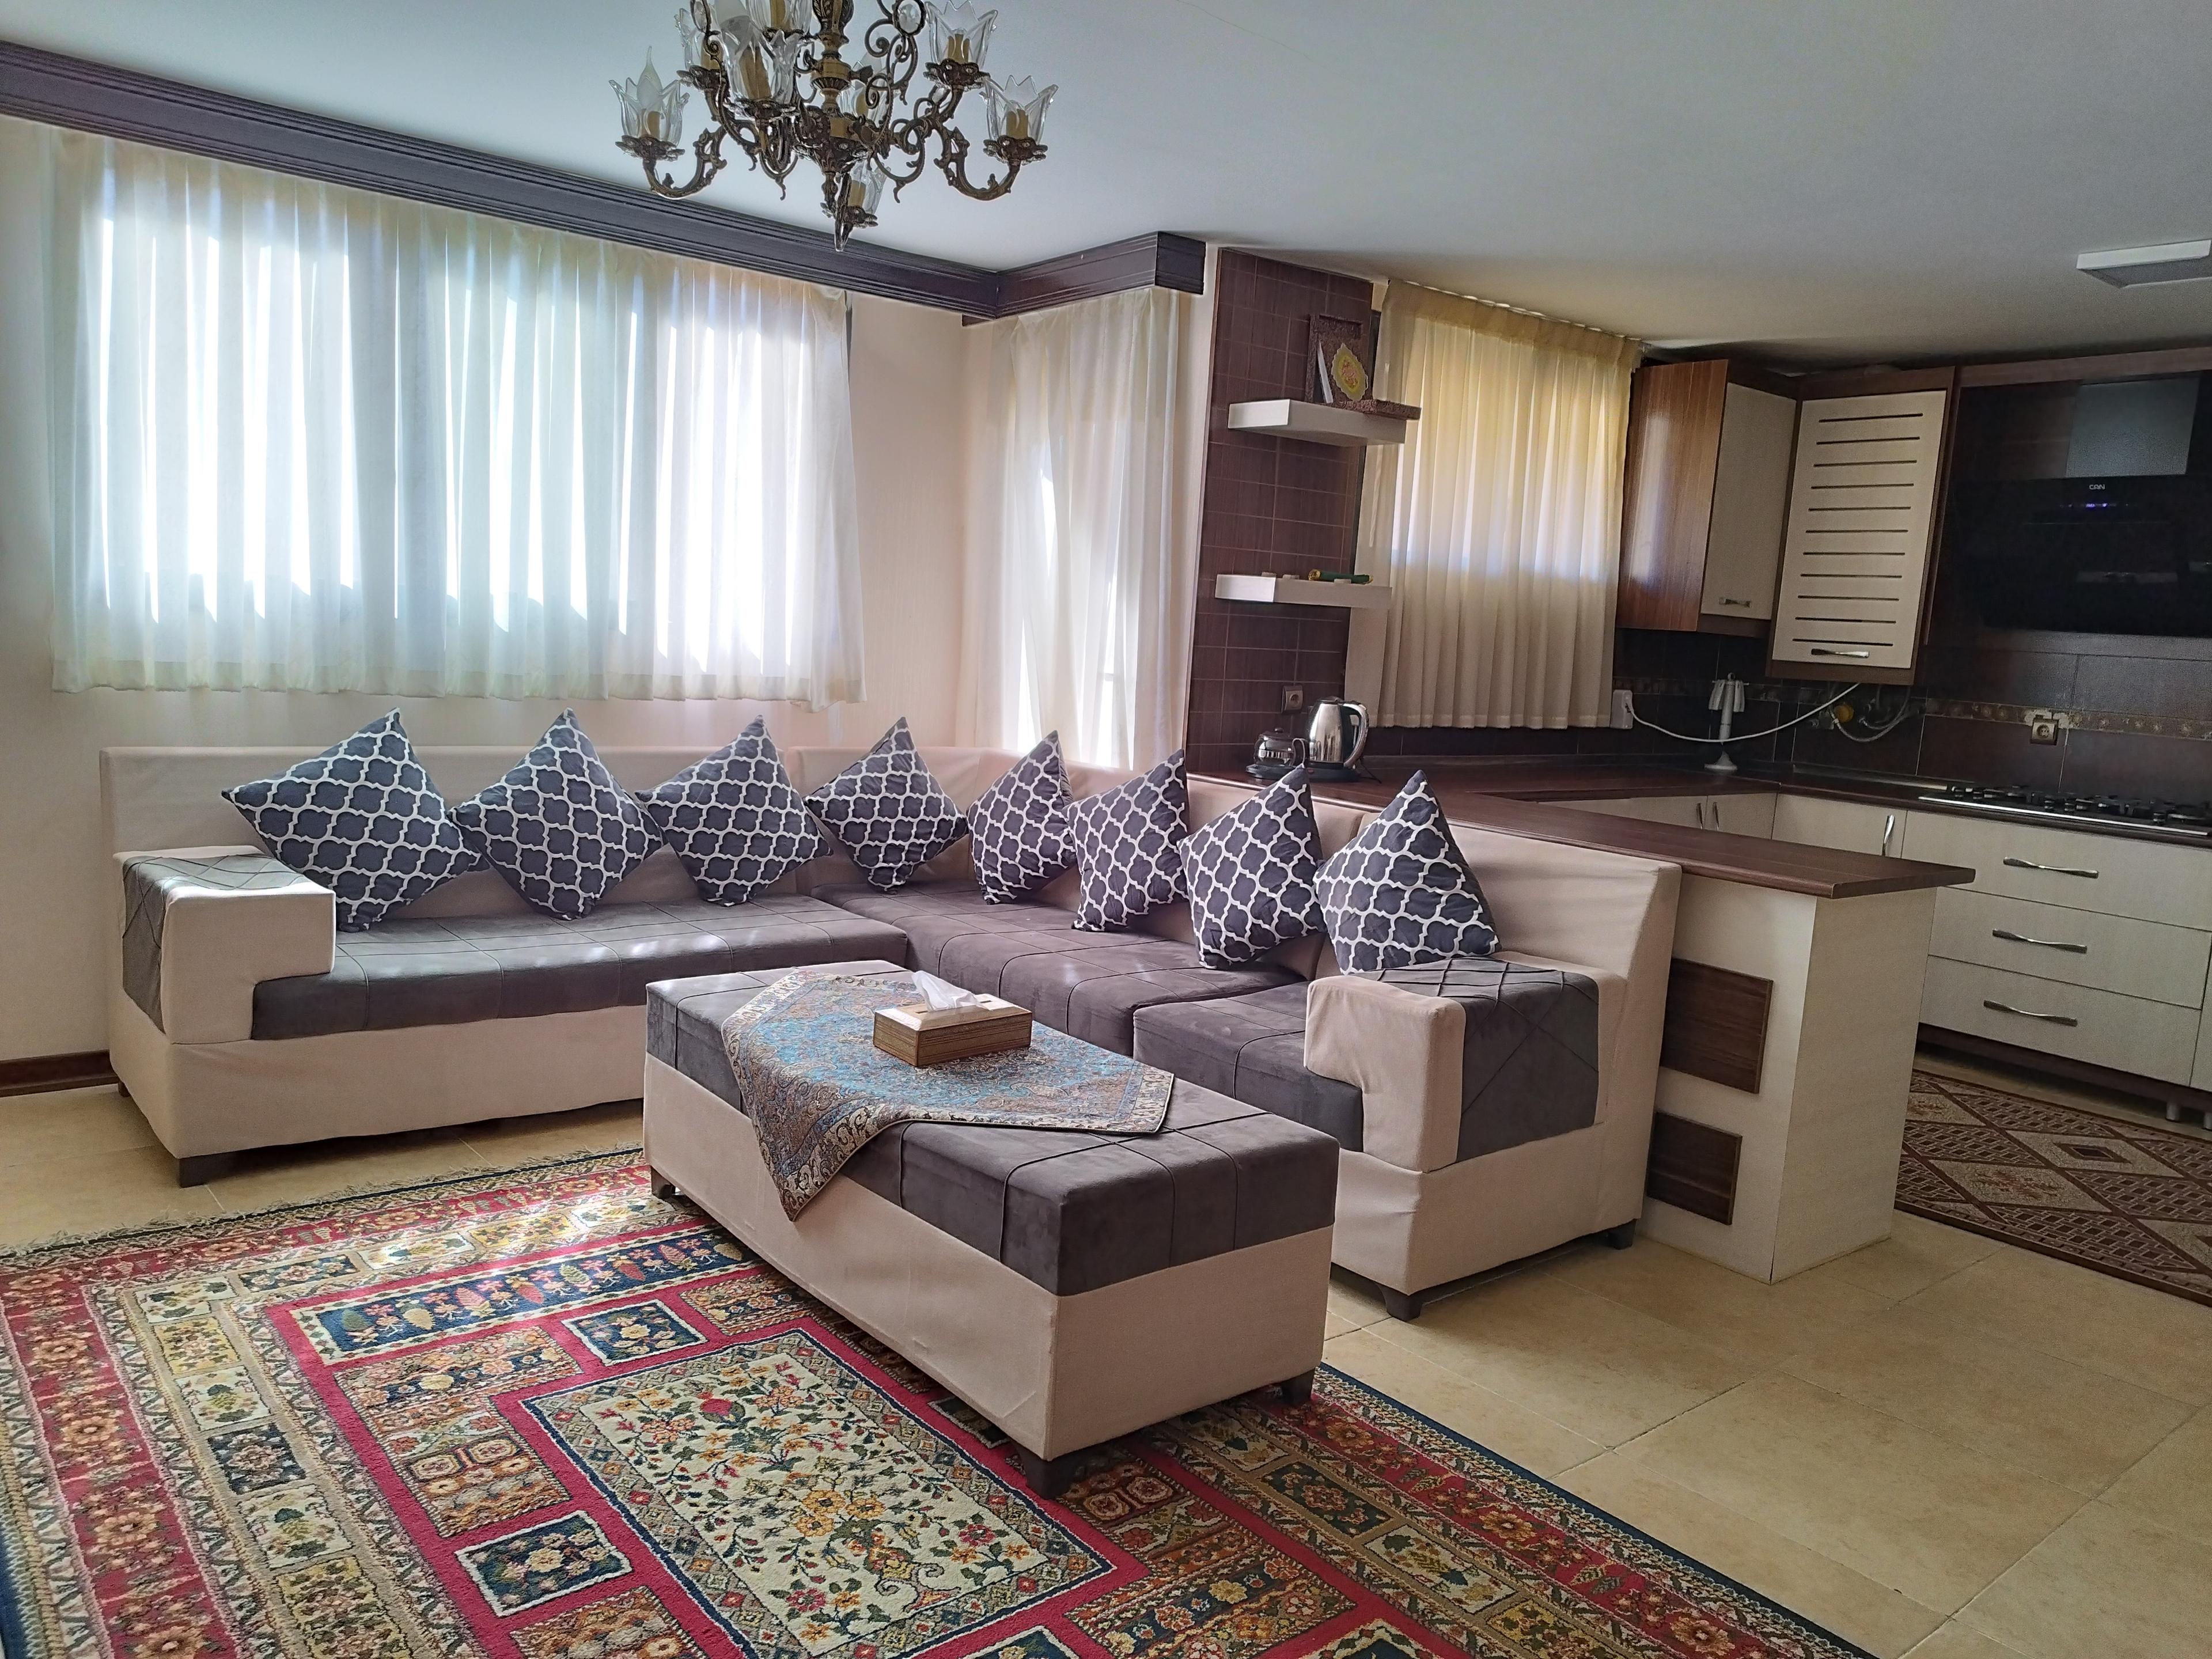 آپارتمان اجاره ای روزانه در اصفهان